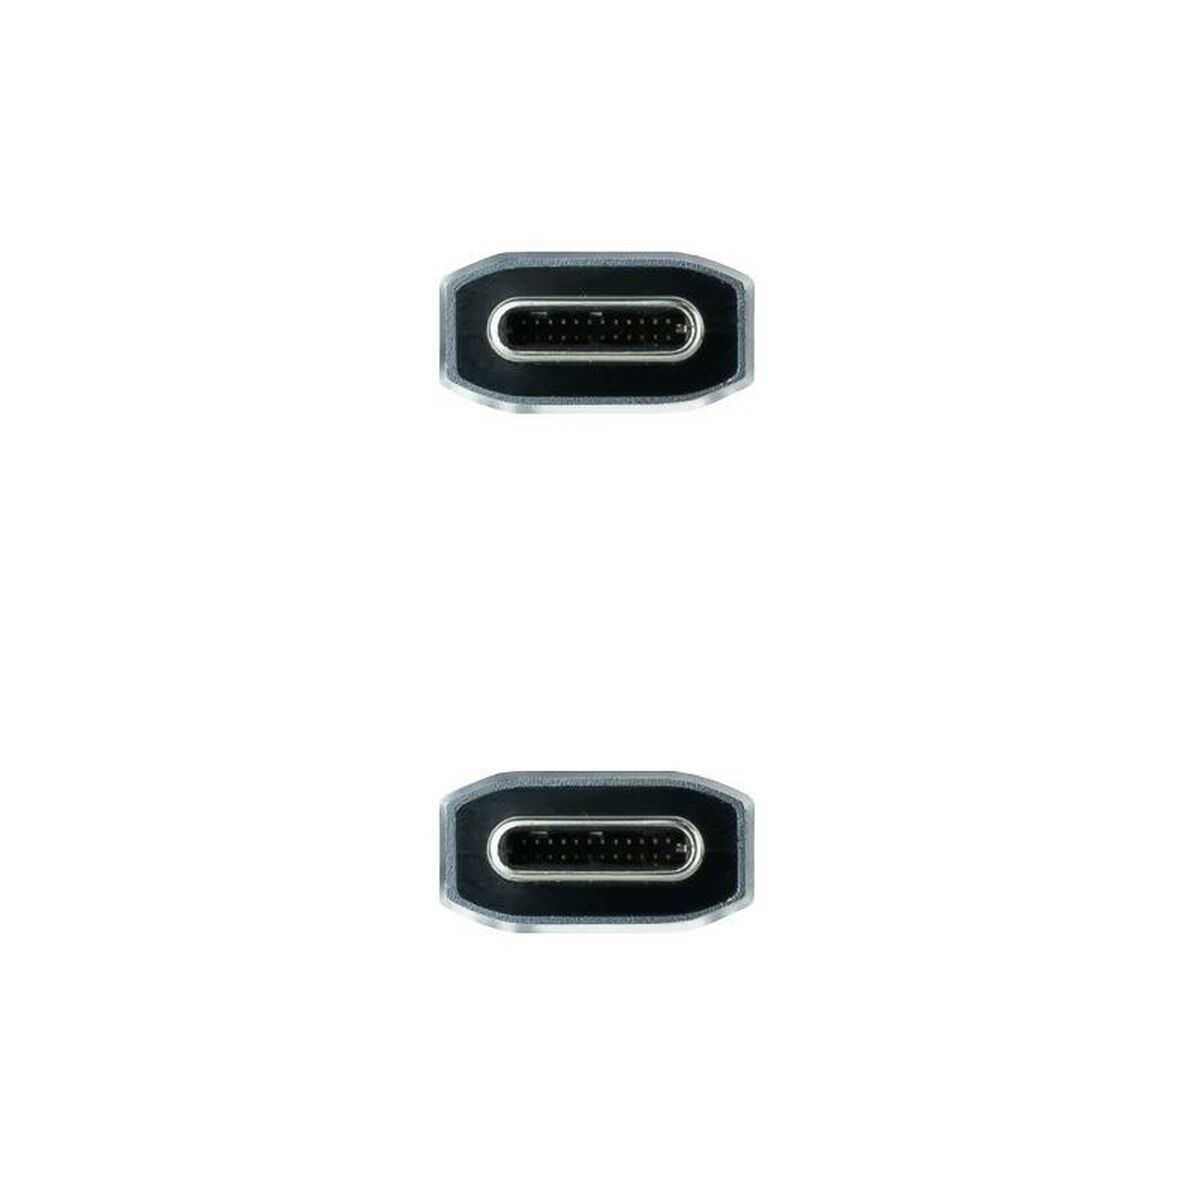 NANOCABLE 10.01.4102-COMB Kabel USB-C 3.1